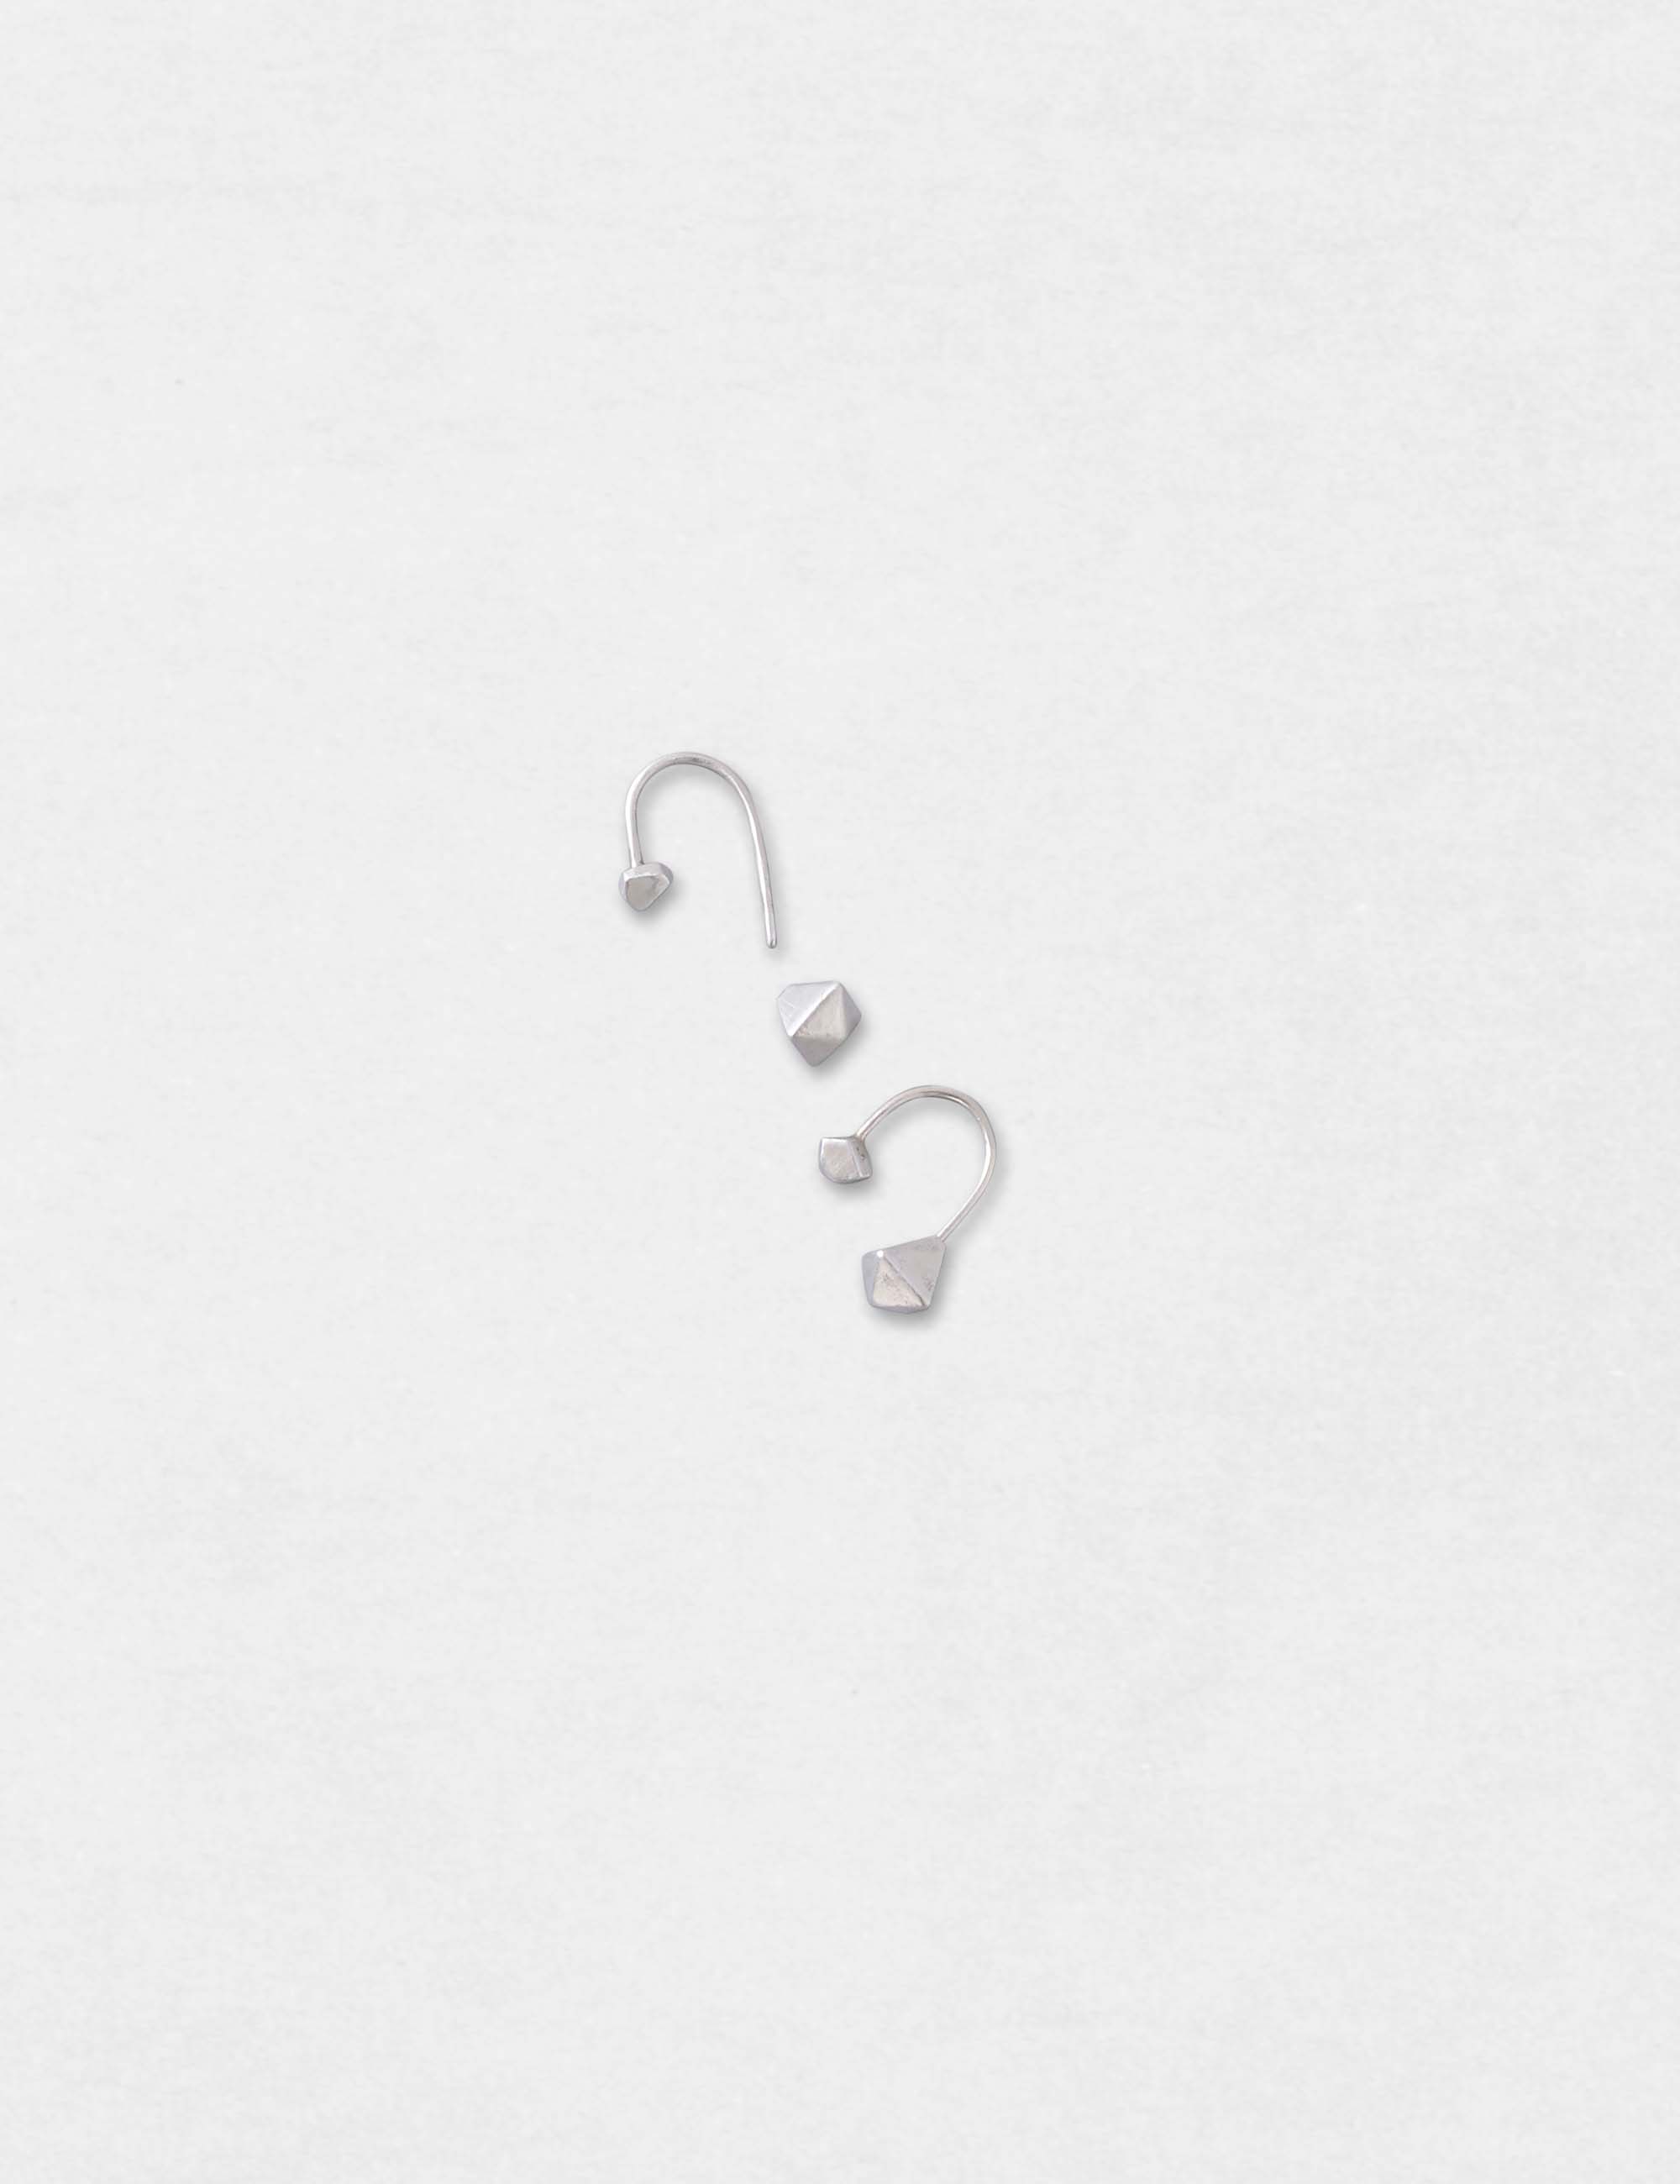 銀の耳飾り / ヨーガンレール